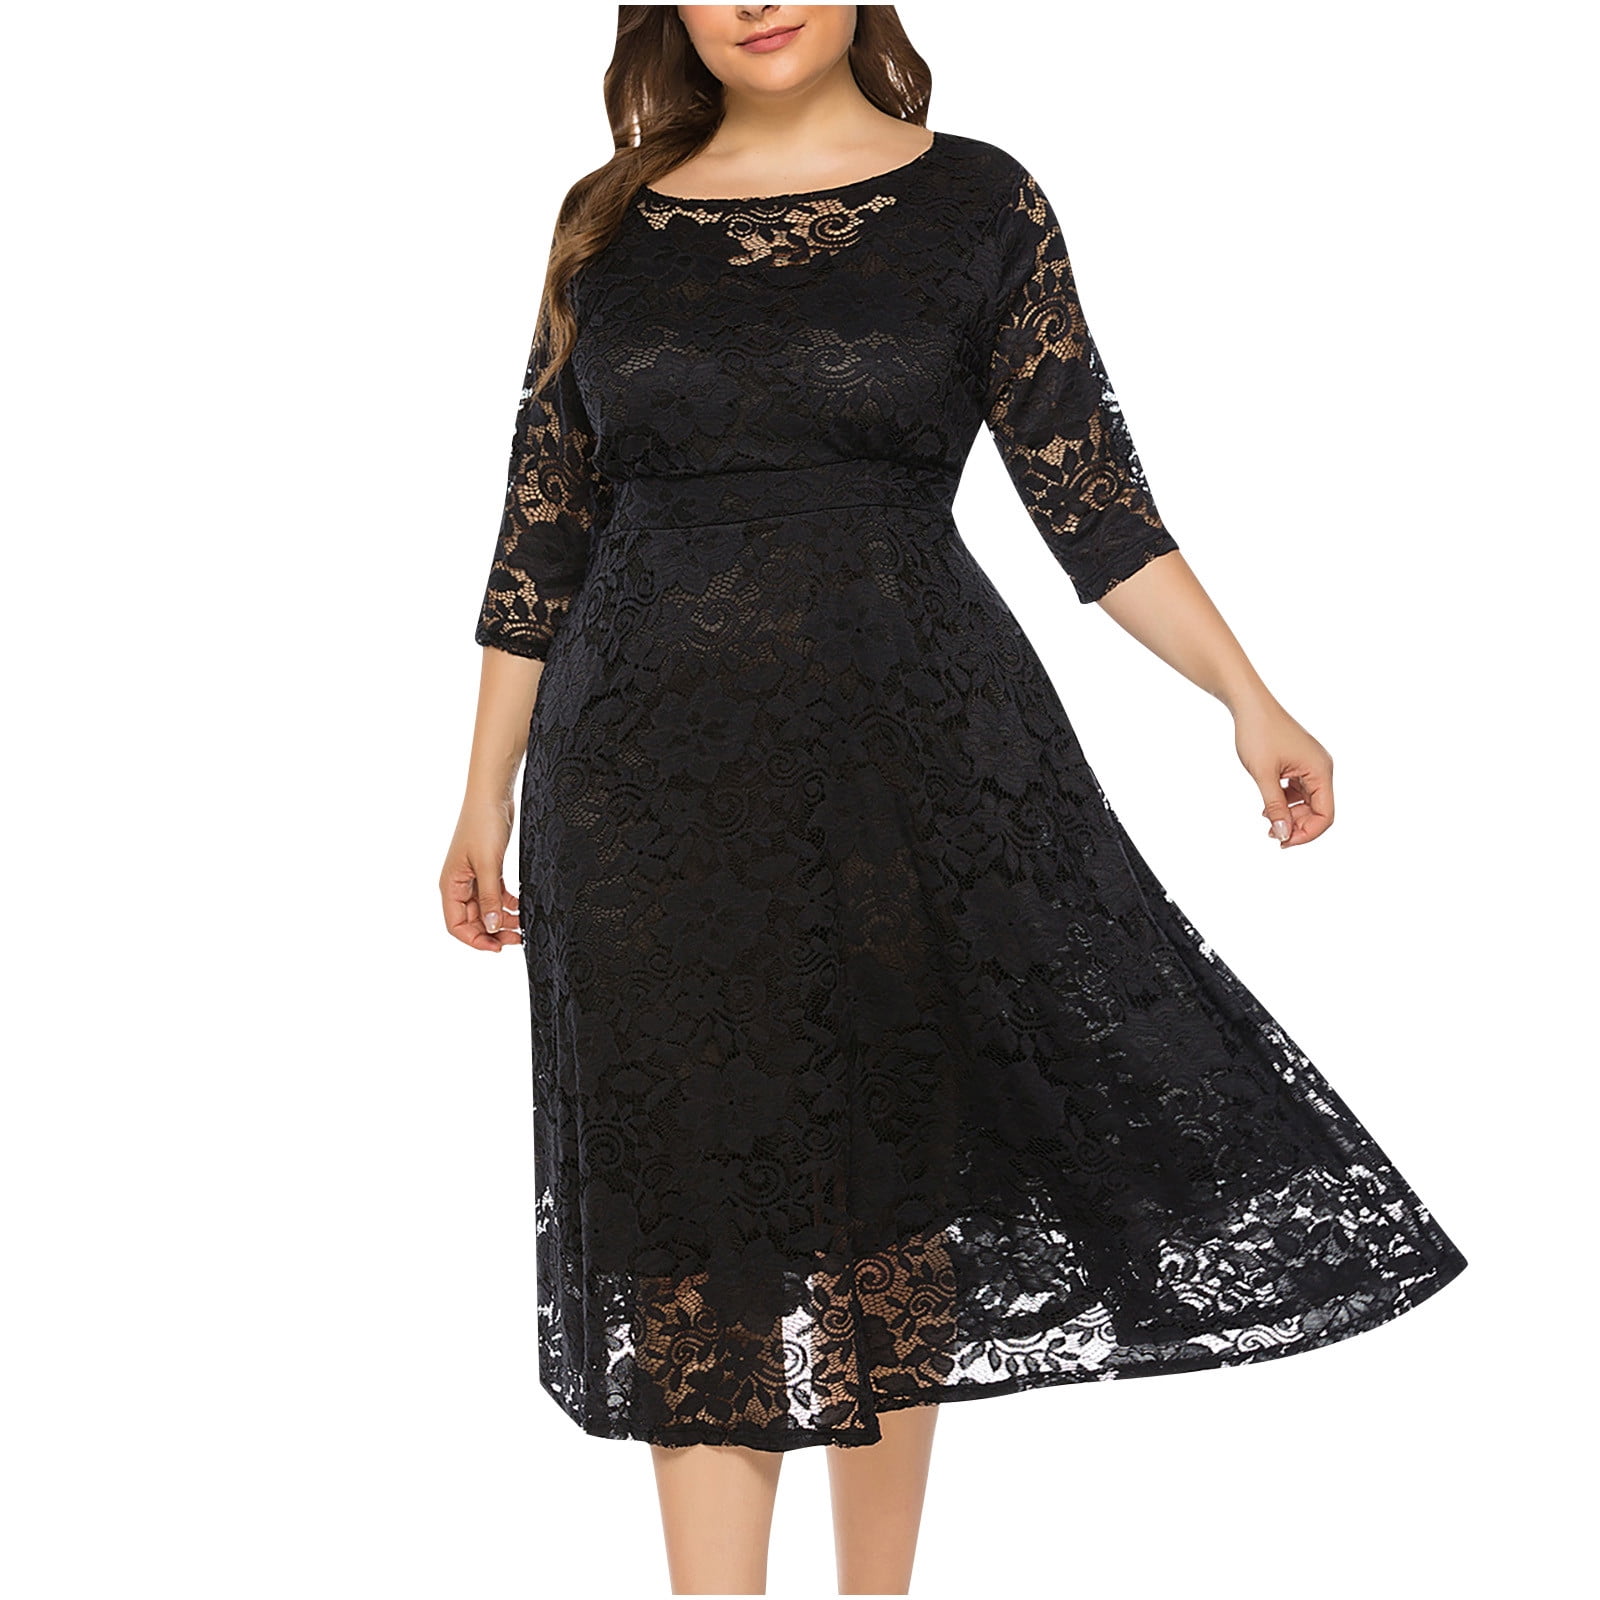 Fesfesfes Plus Size Dress for Women Mesh Lace Splicing Semi Formal ...